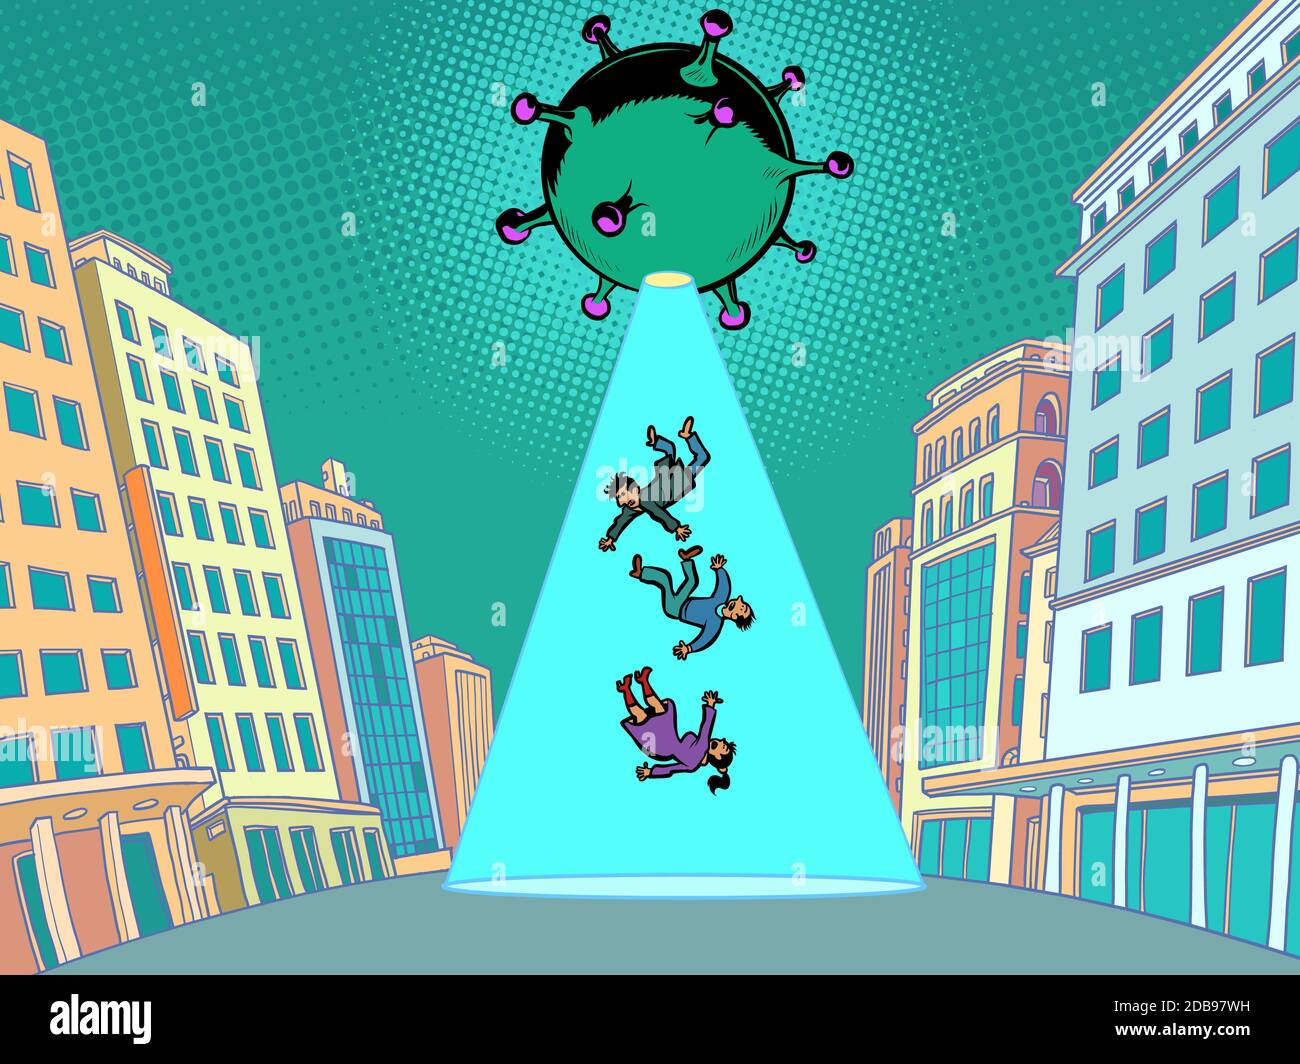 Coronavirus-Epidemie als Alien-Invasion, ein Angriff auf den Menschen. Comics Karikatur Pop Art Retro Illustration Zeichnung Stockfoto